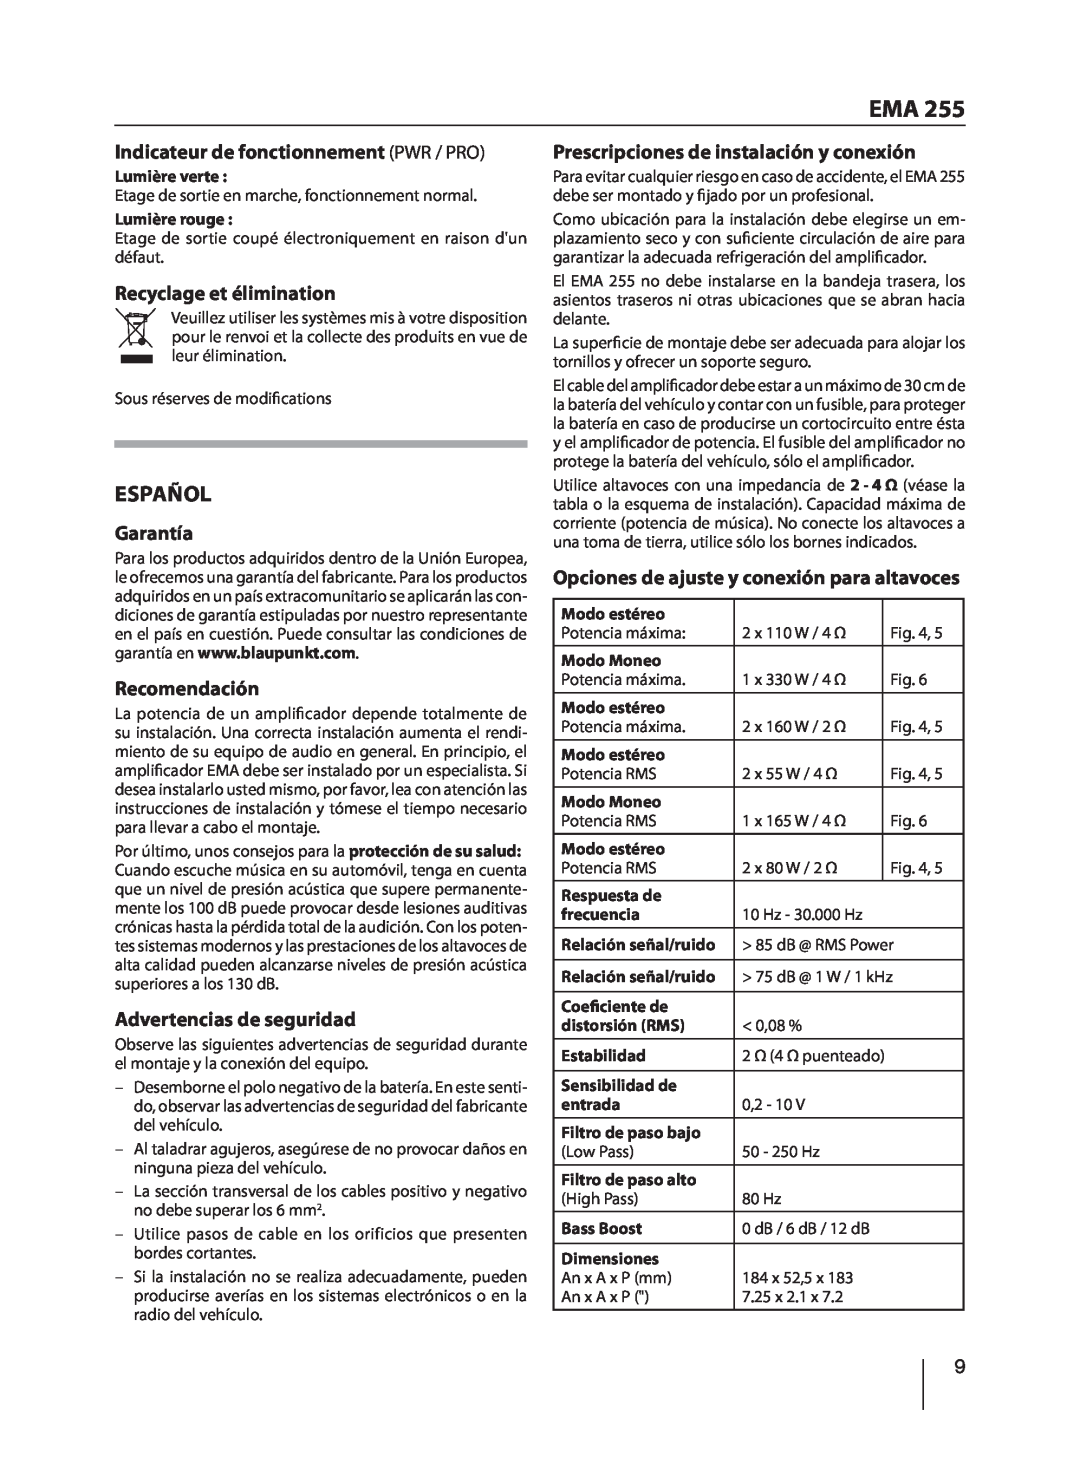 Blaupunkt EMA 255 manual Español, Indicateur de fonctionnement PWR / PRO, Recyclage et élimination, Garantía, Recomendación 